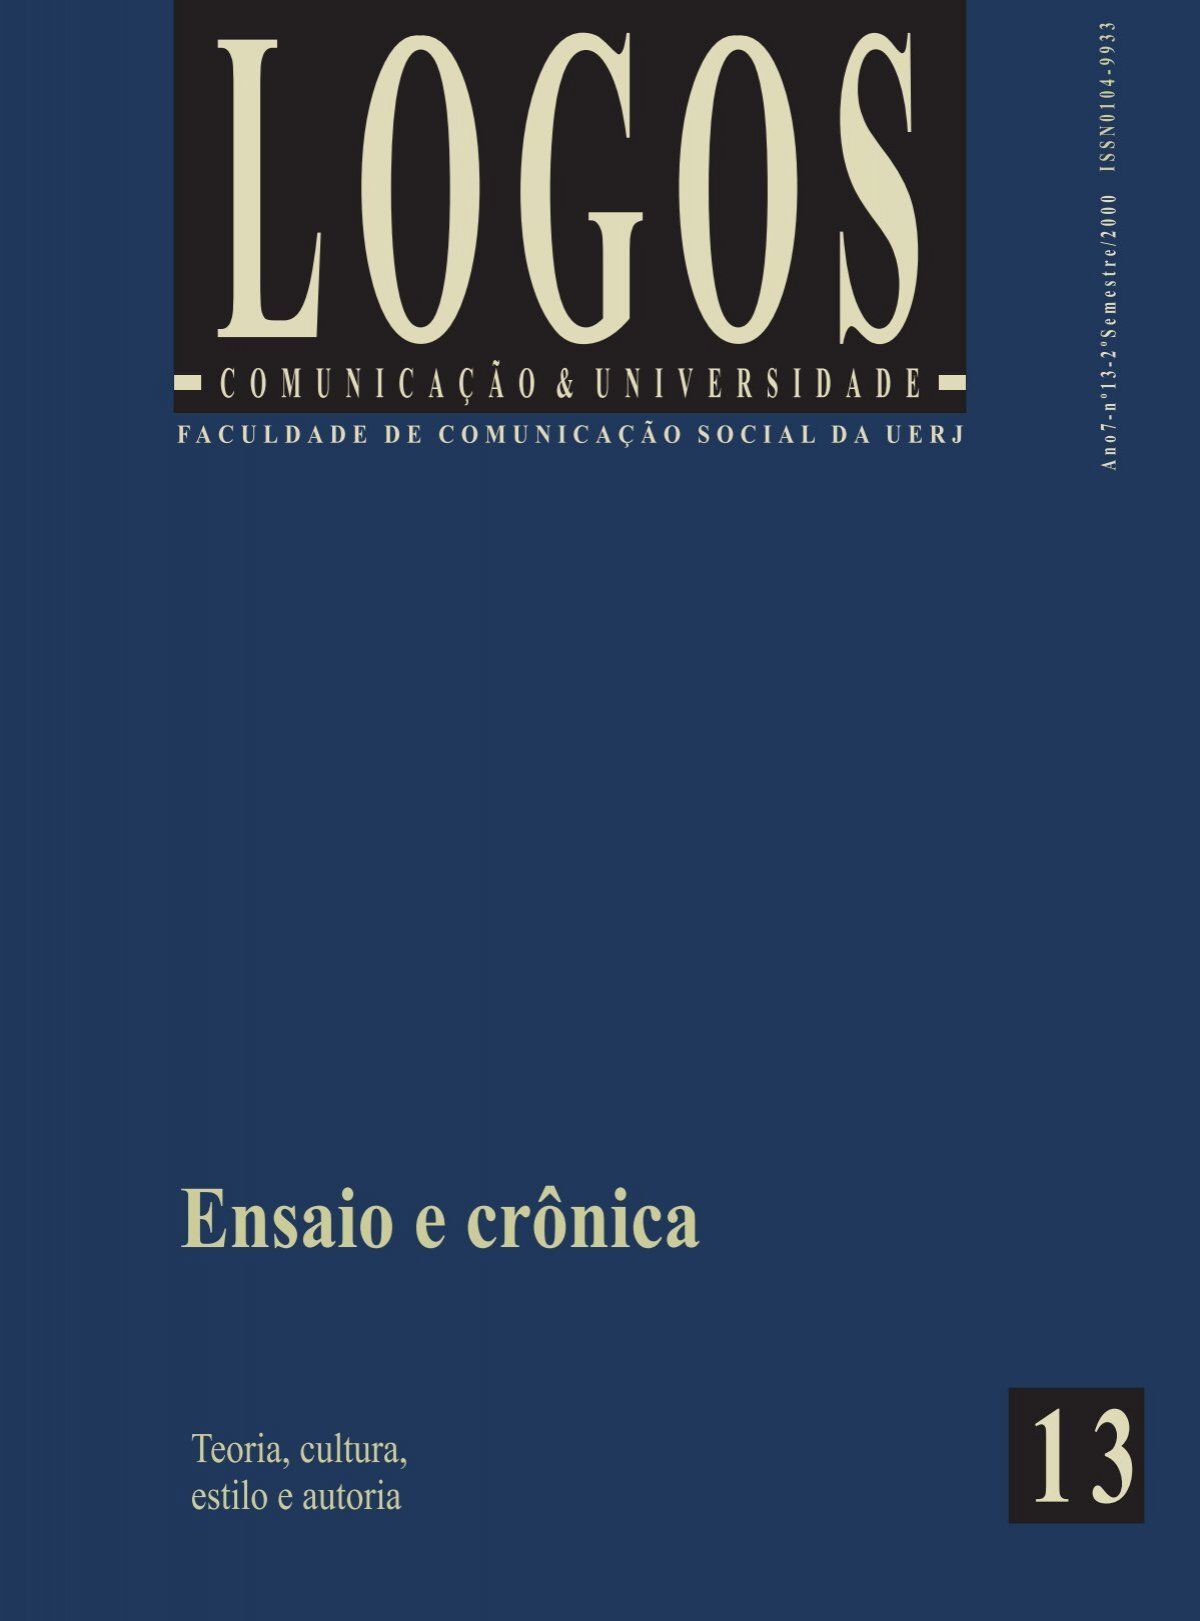 FACULDADE DE COMUNICAÇÃO SOCIAL - Logos - Uerj